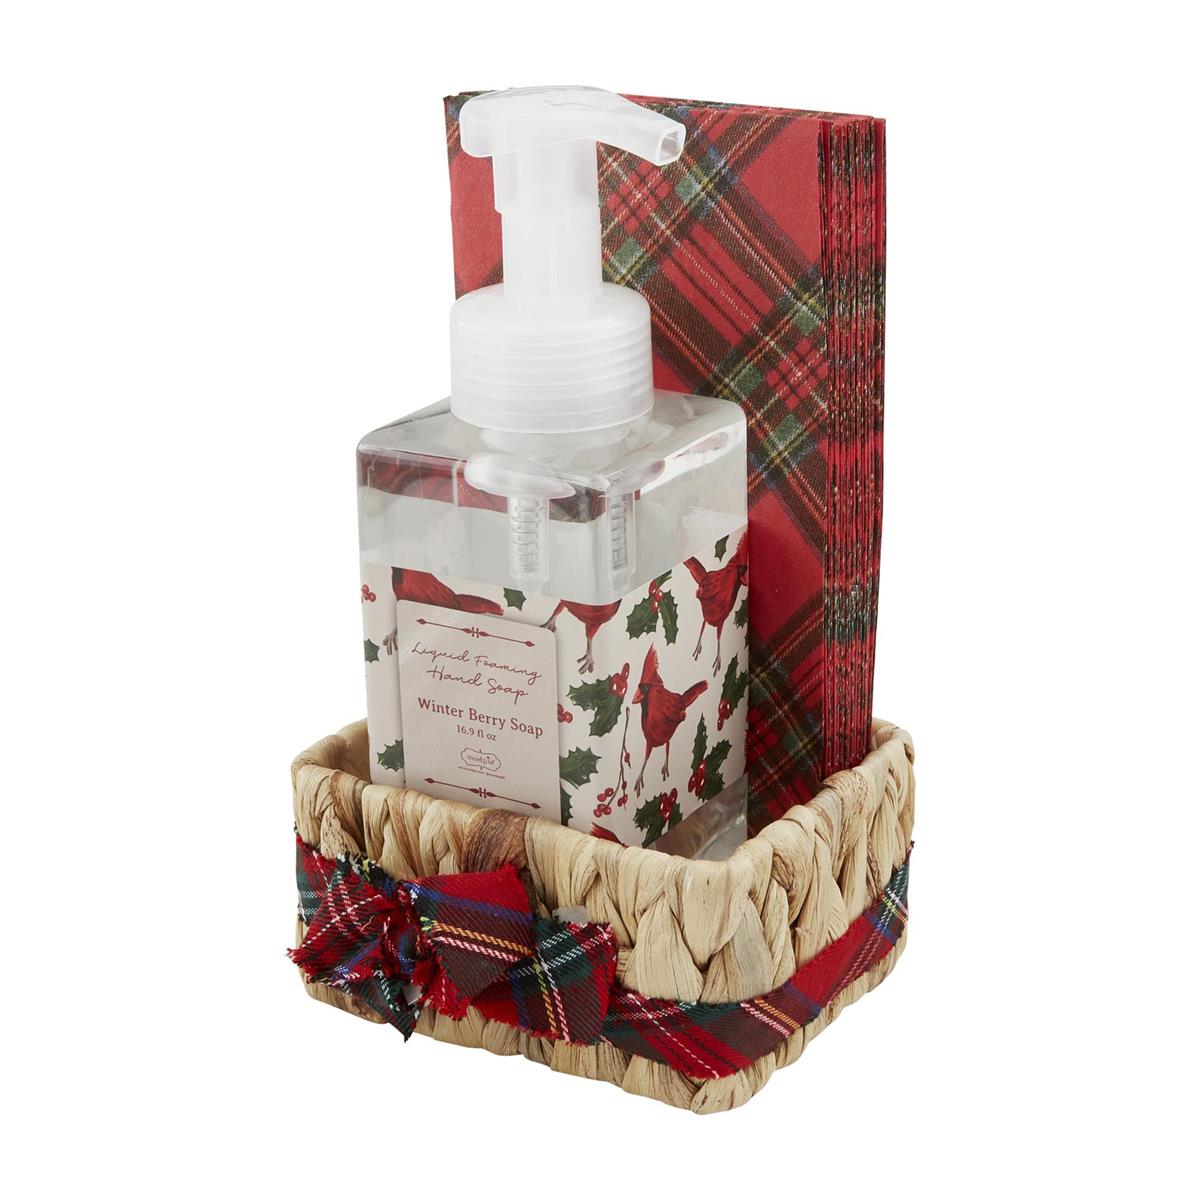 Tartan Soap & Guest Towel Basket Sets - The Season Boutique